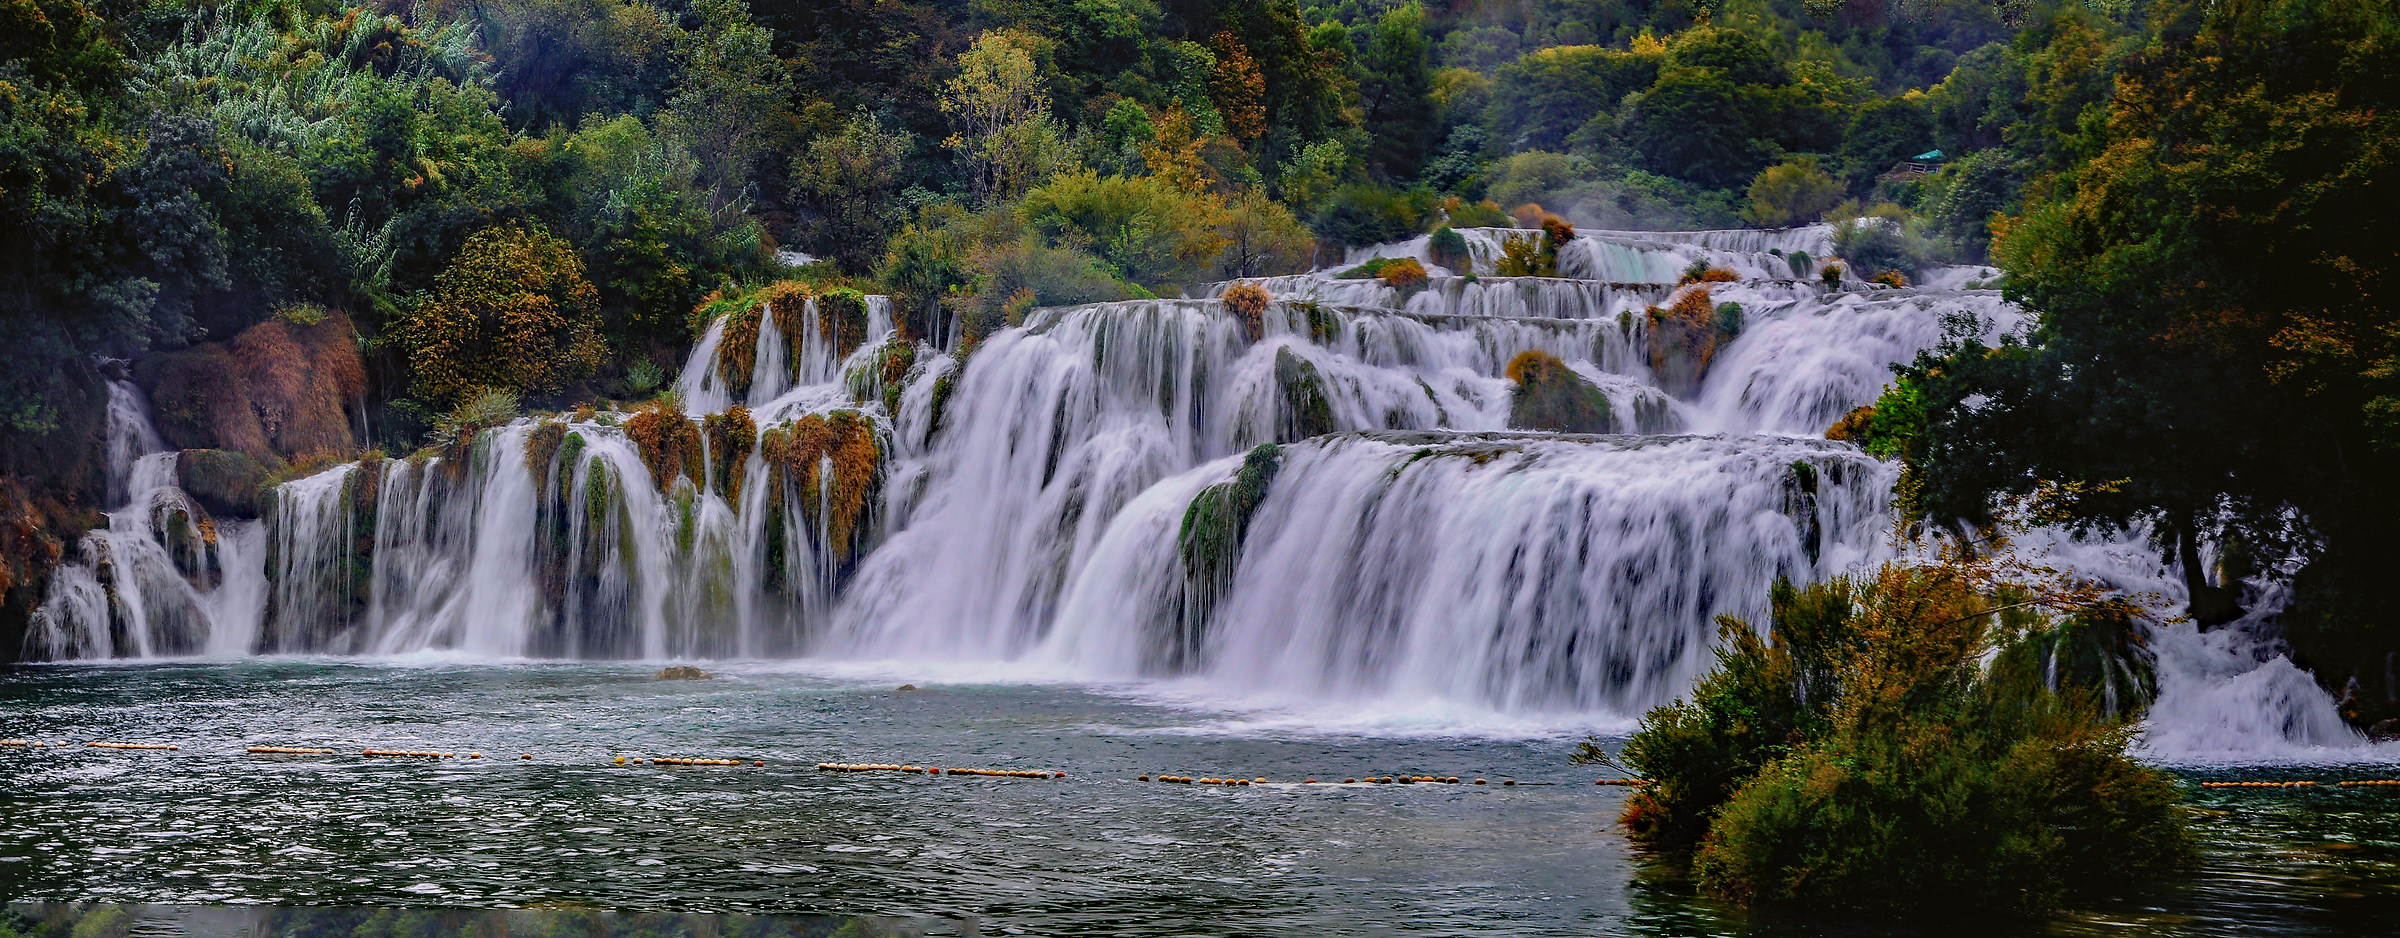 Waterfall of Krka-Croatia...